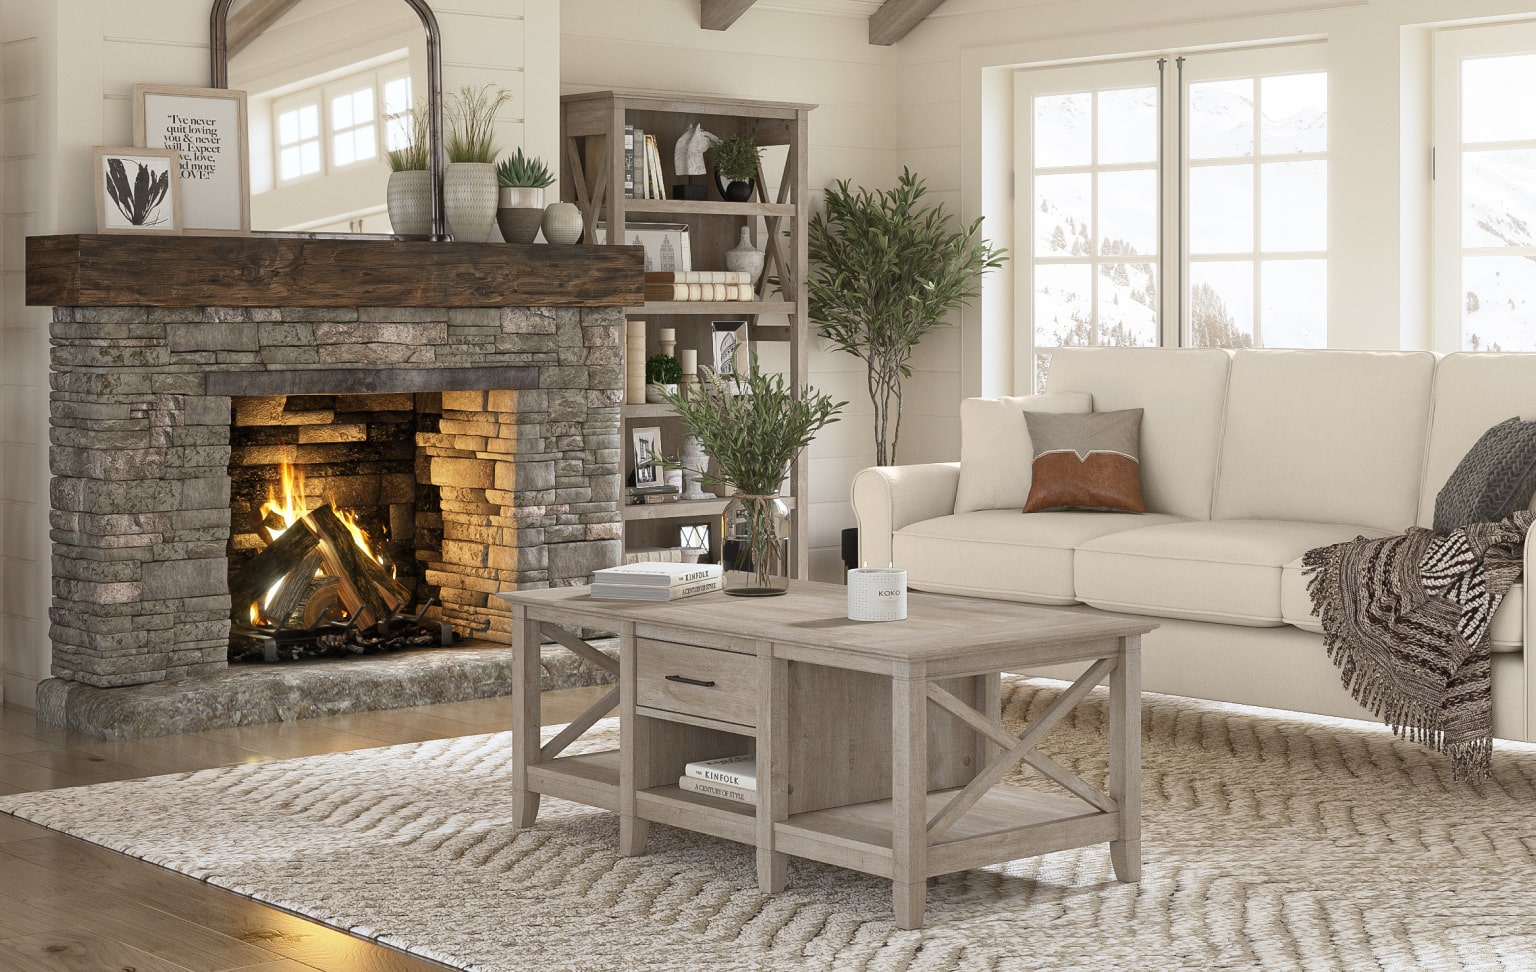 5 Cozy Living Room Decor Ideas